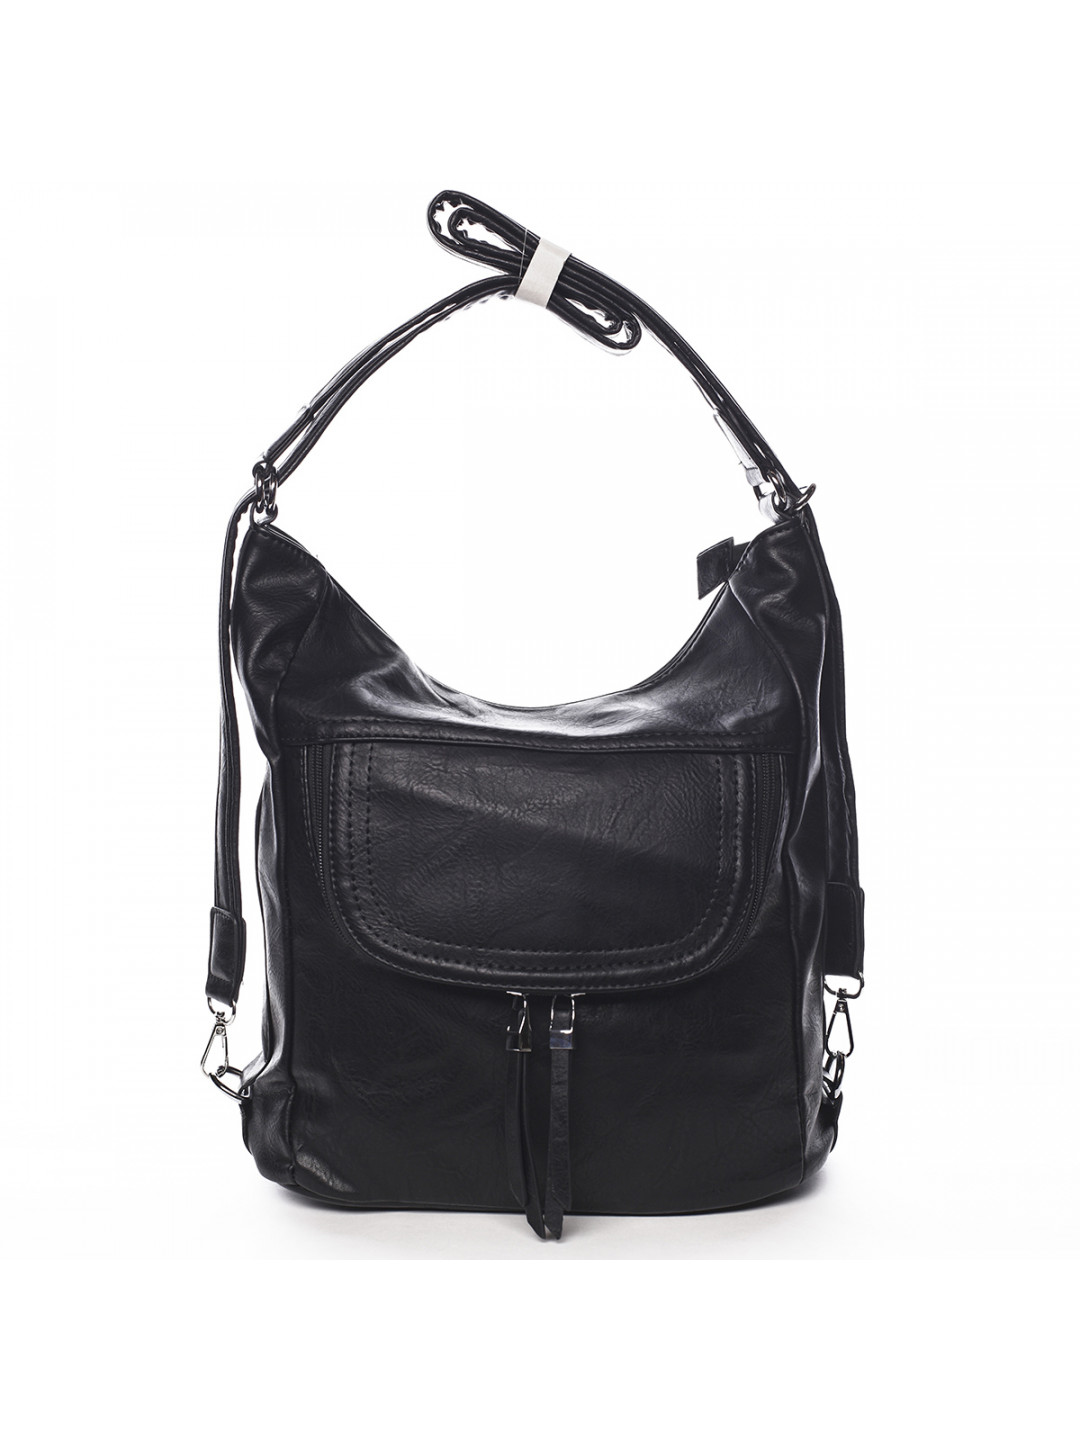 Pohodlná dámská kabelka batoh Marcellin černá